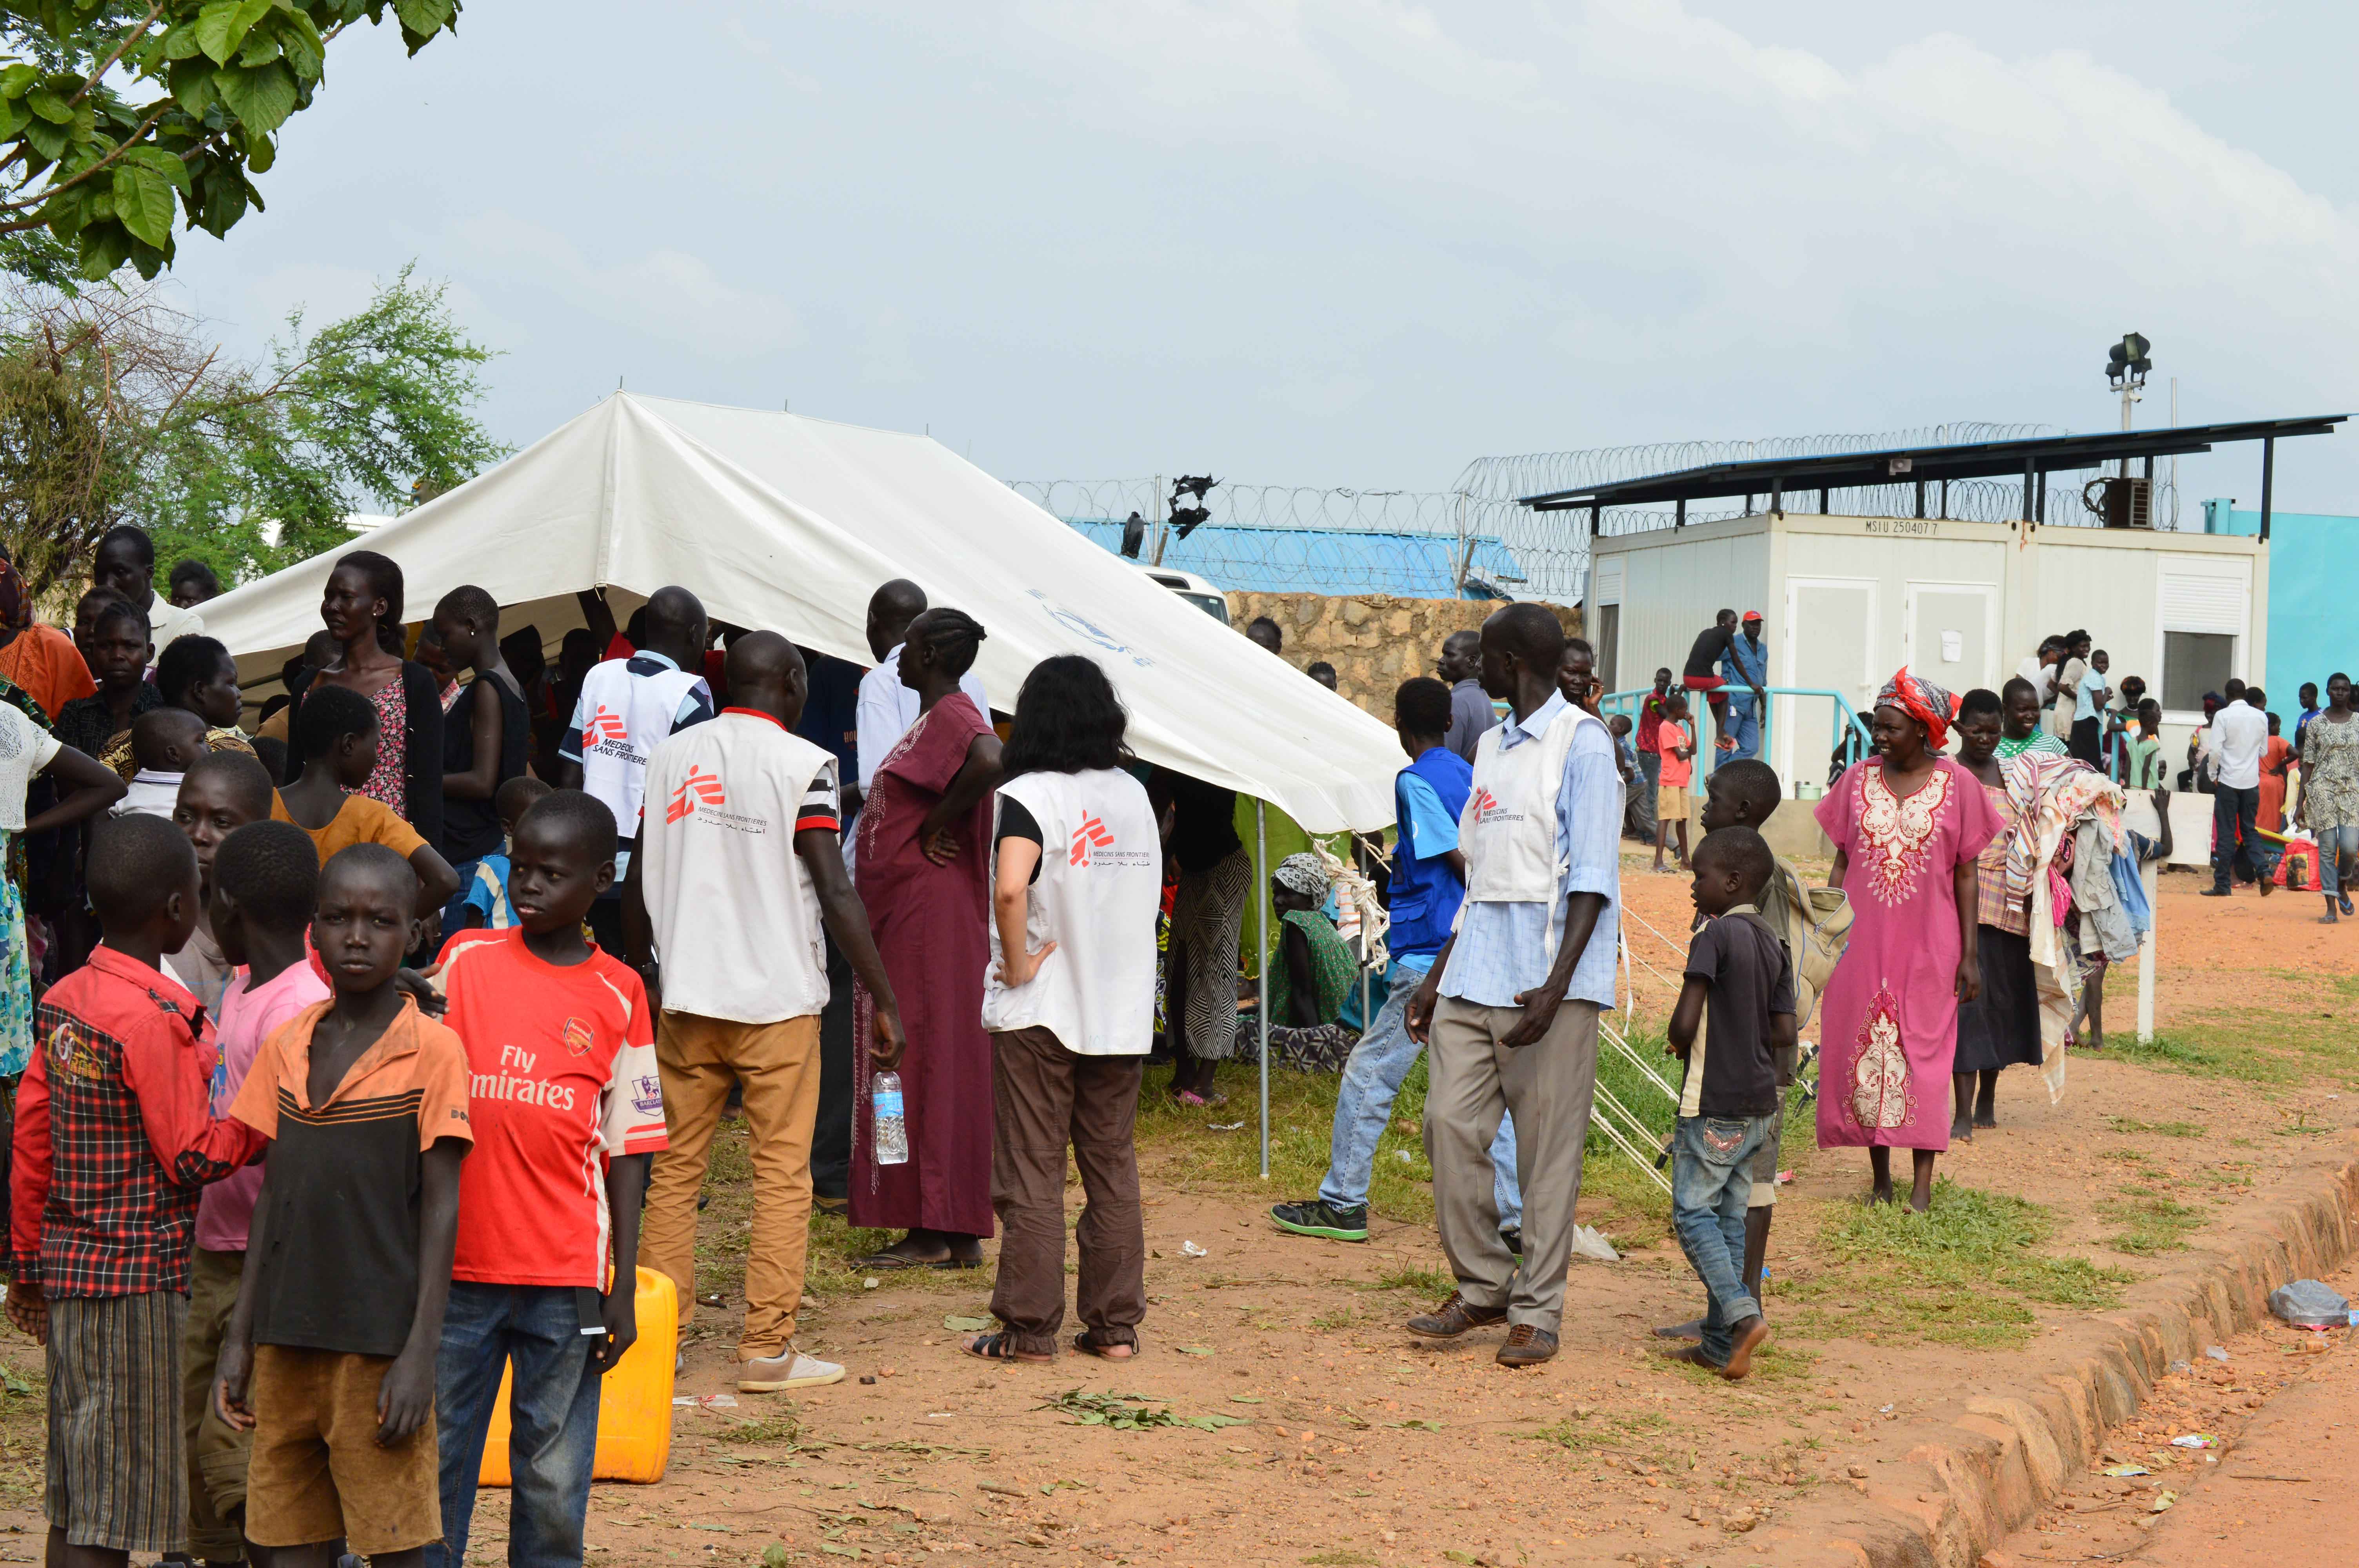 AZG heeft inmiddels een mobiel ziekenhuis opgezet in de getroffen regio in Zuid-Soedan. ©Raphael Veicht/AZG